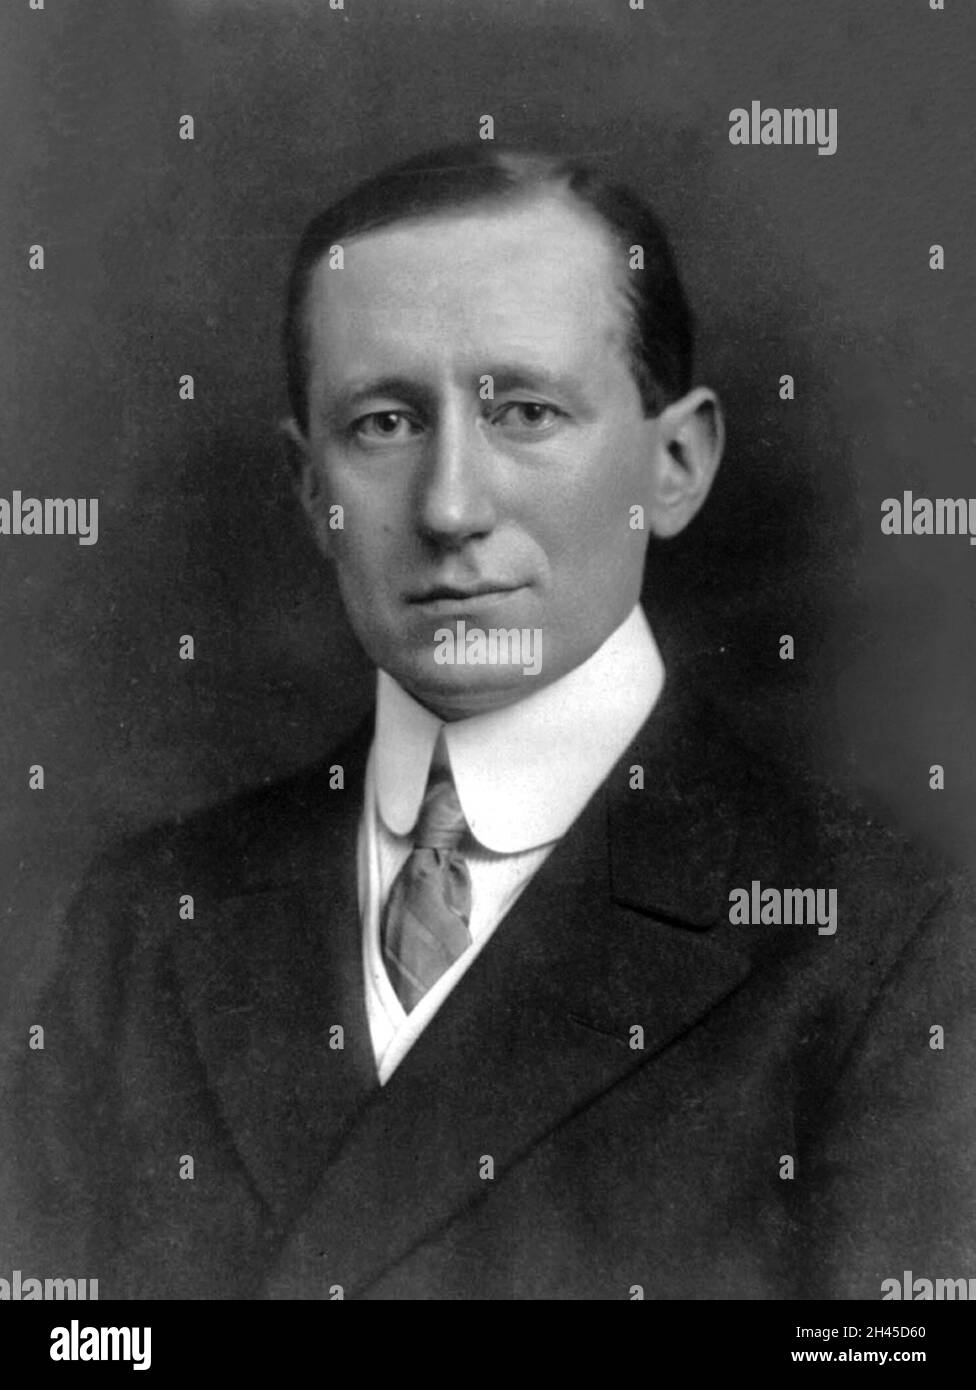 Der italienische Elektroingenieur Guglielmo Marconi, der das Radio erfunden  hat Stockfotografie - Alamy